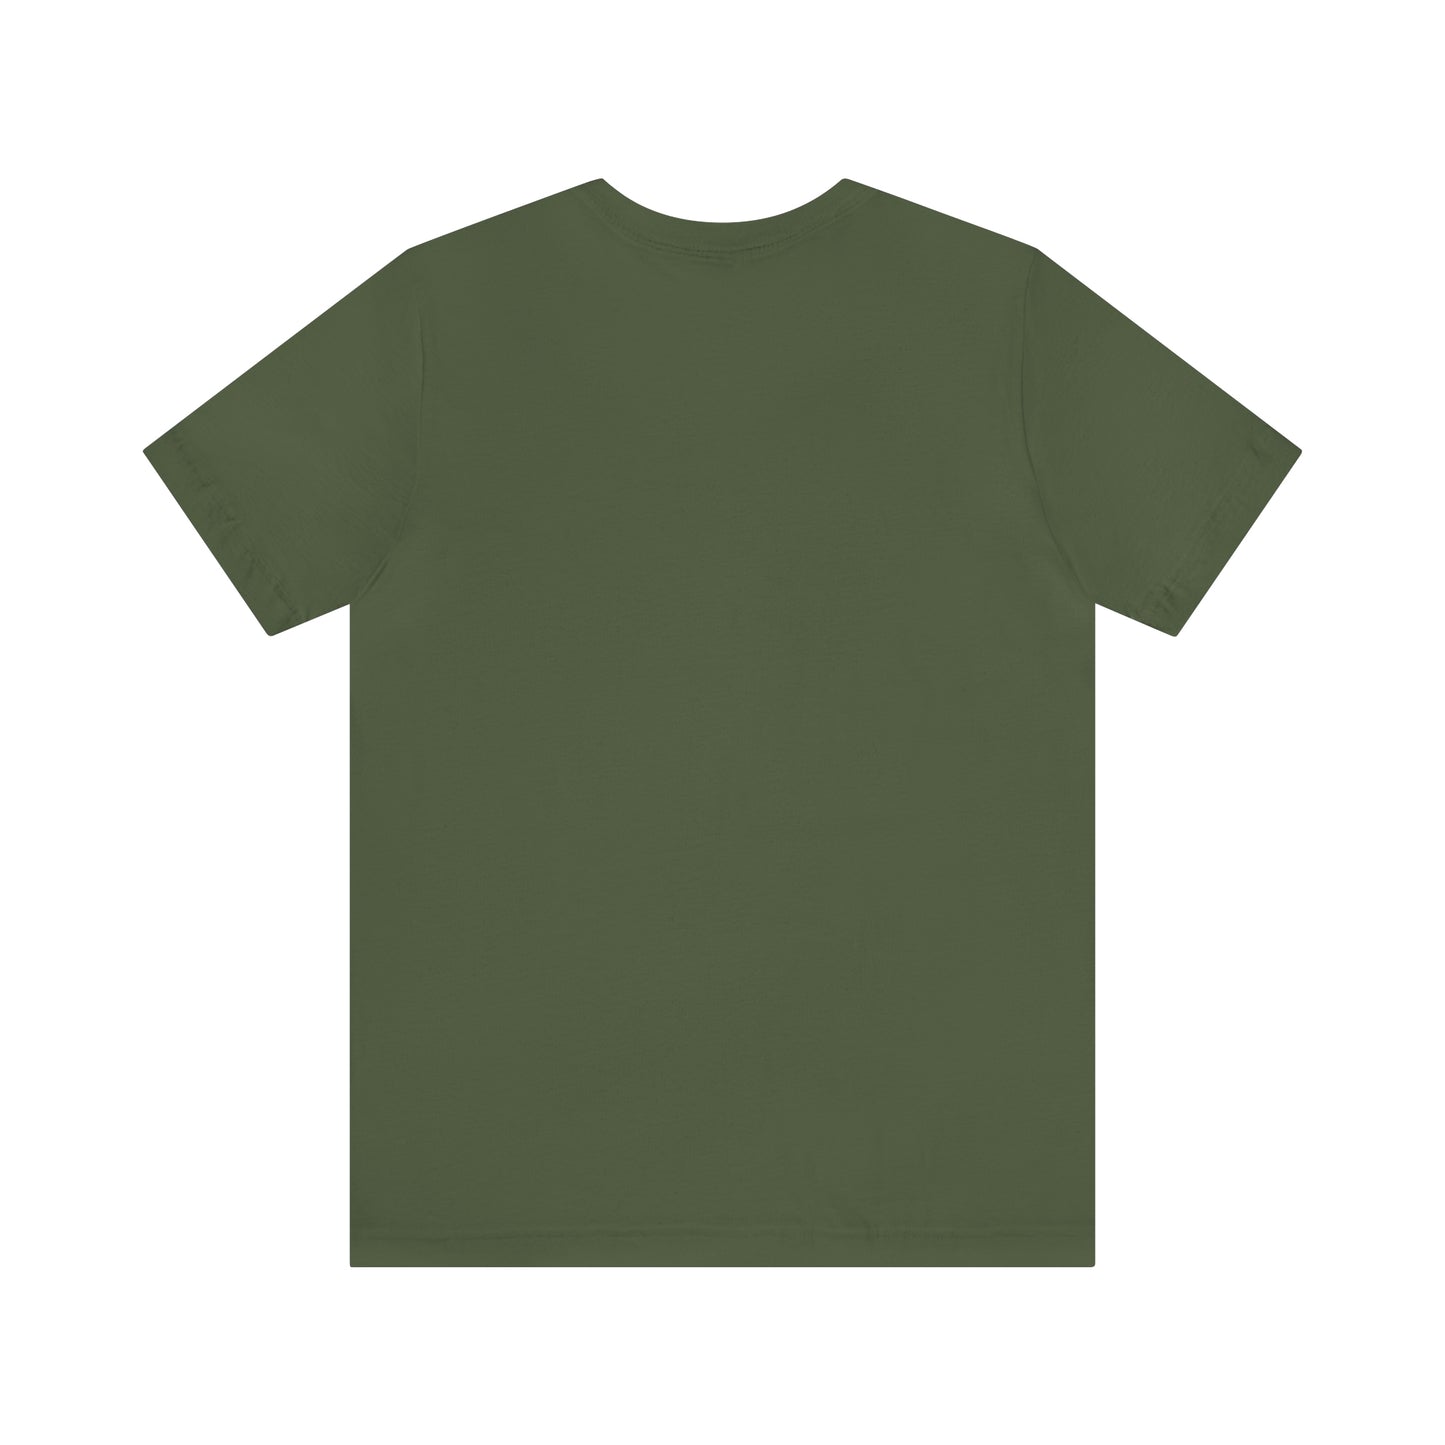 "Teacher Off Duty" t-shirt Unisex Jersey Short Sleeve Tee